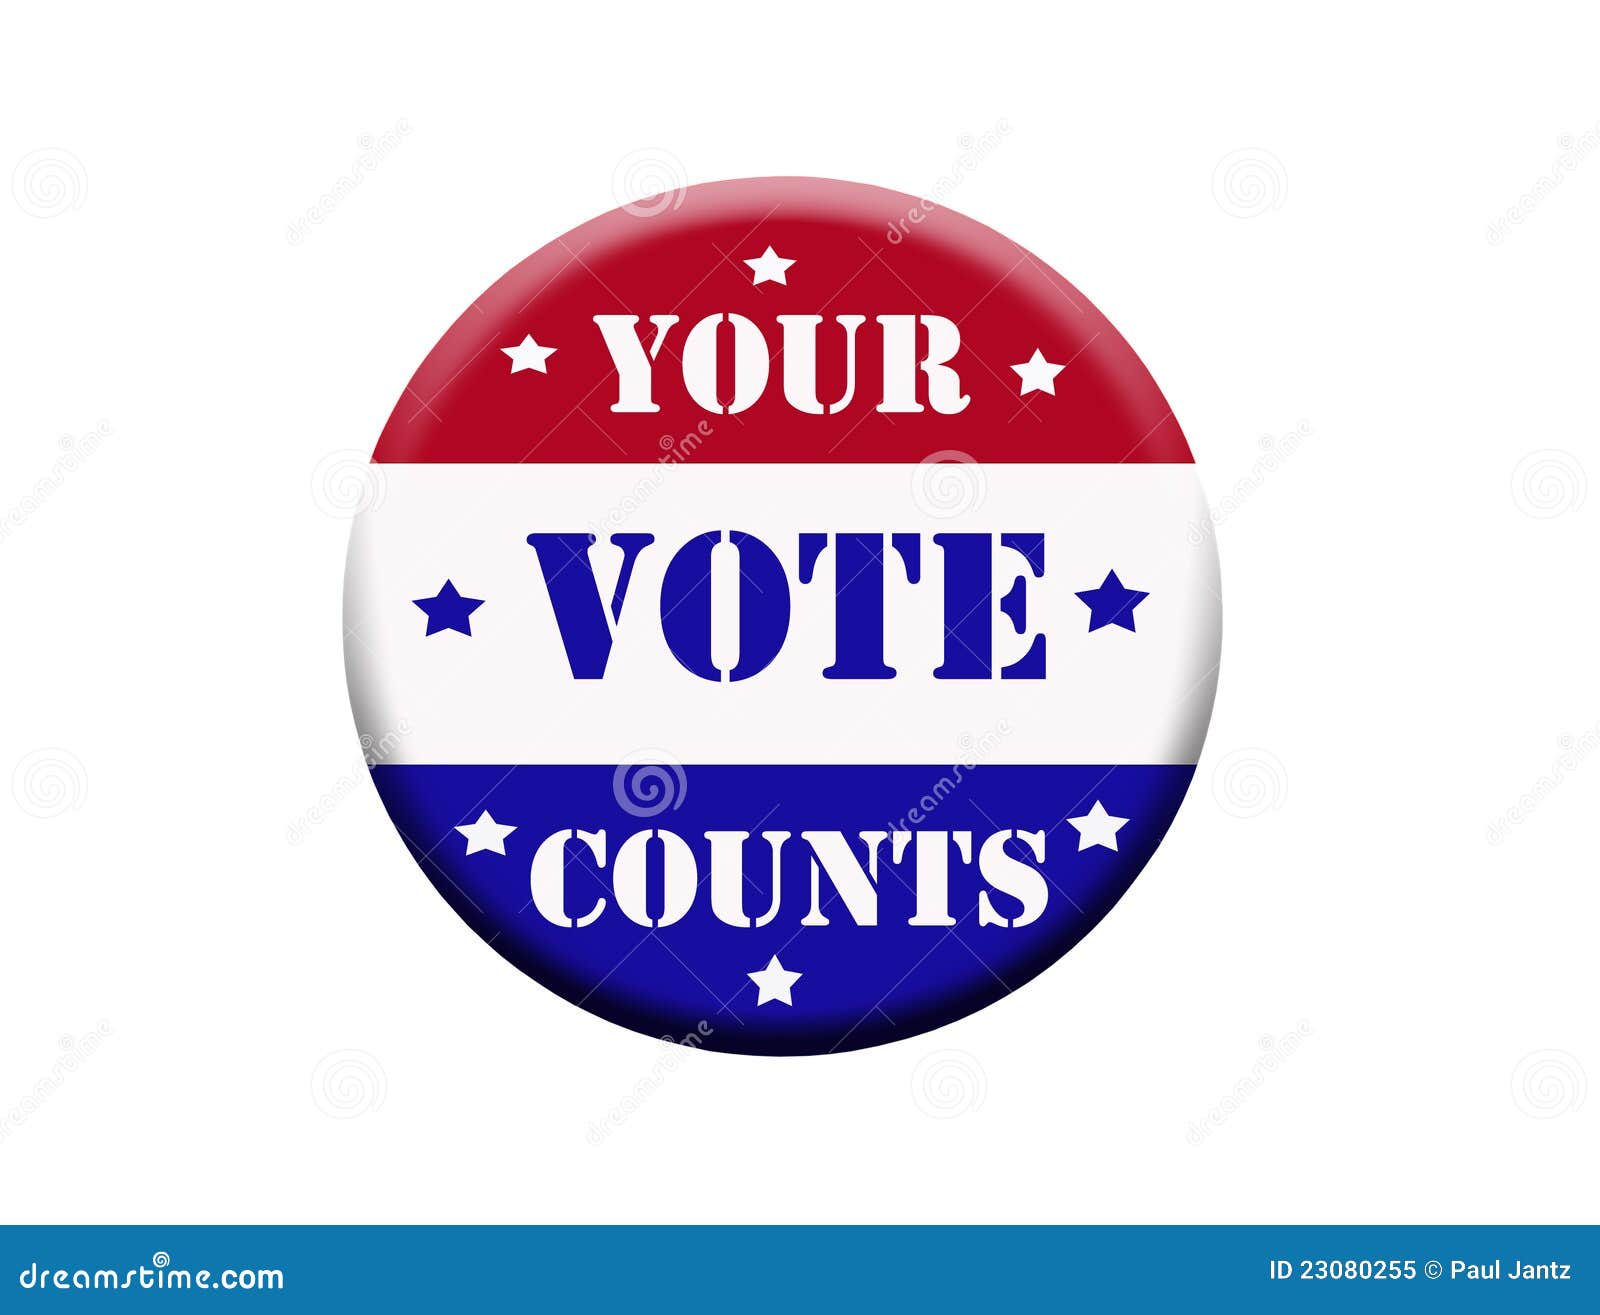 vote button clipart - photo #25